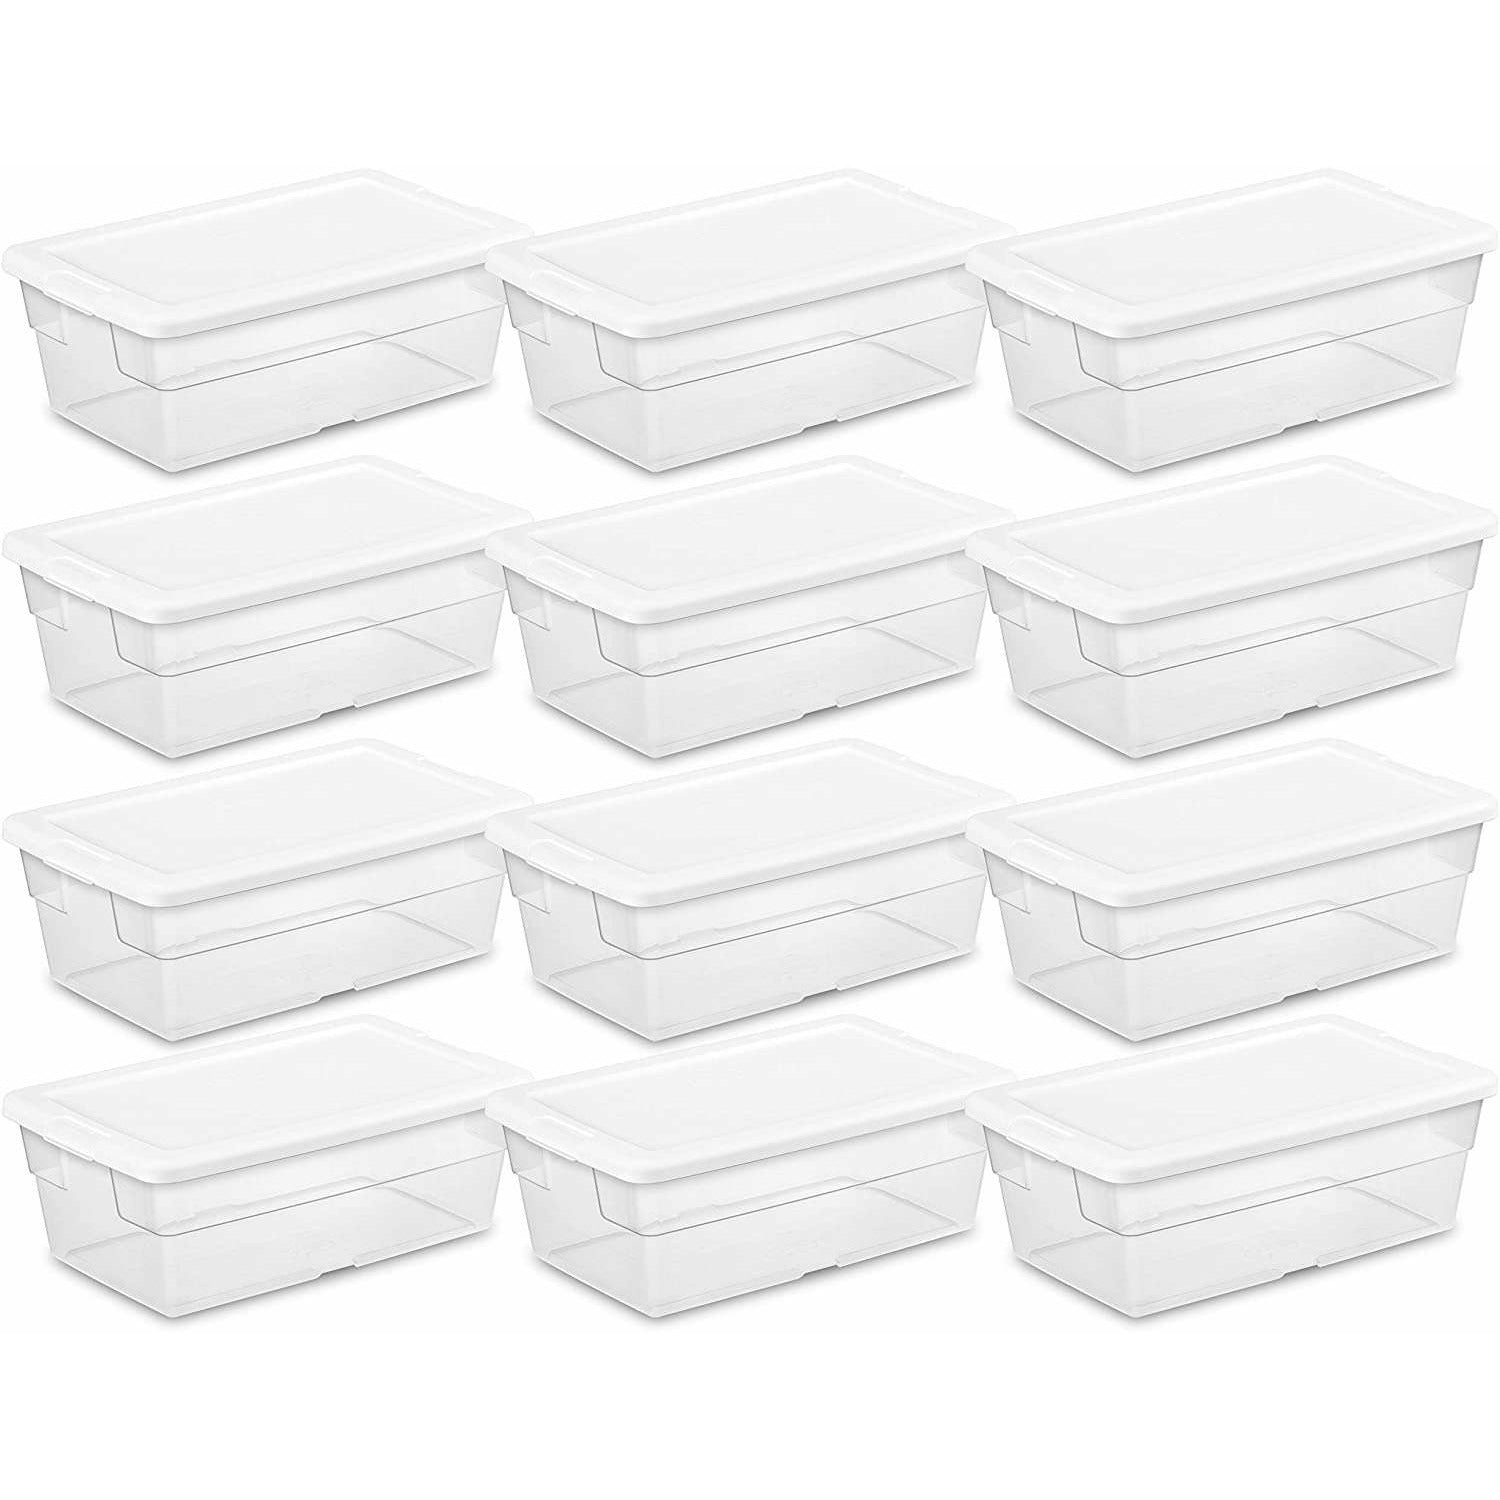 WHOLESALE STERILITE STORAGE BOX 6 QT WHITE SOLD BY CASE – Wholesale  California